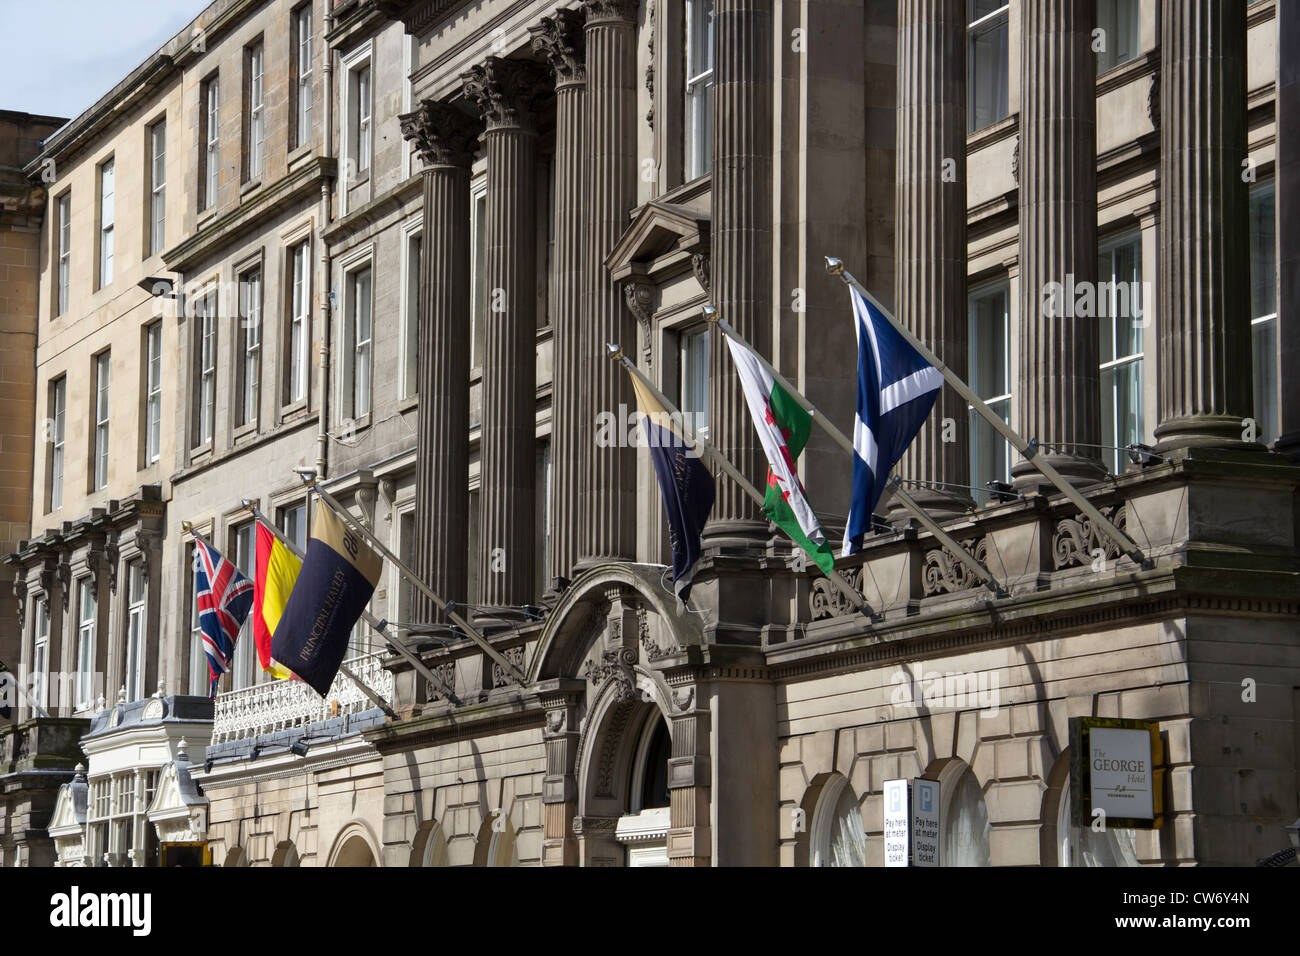 Un bâtiment d'hôtel à Edimbourg en Ecosse, avec des drapeaux à l'avant. Ces bâtiments ont tous le même genre d'architecture Banque D'Images